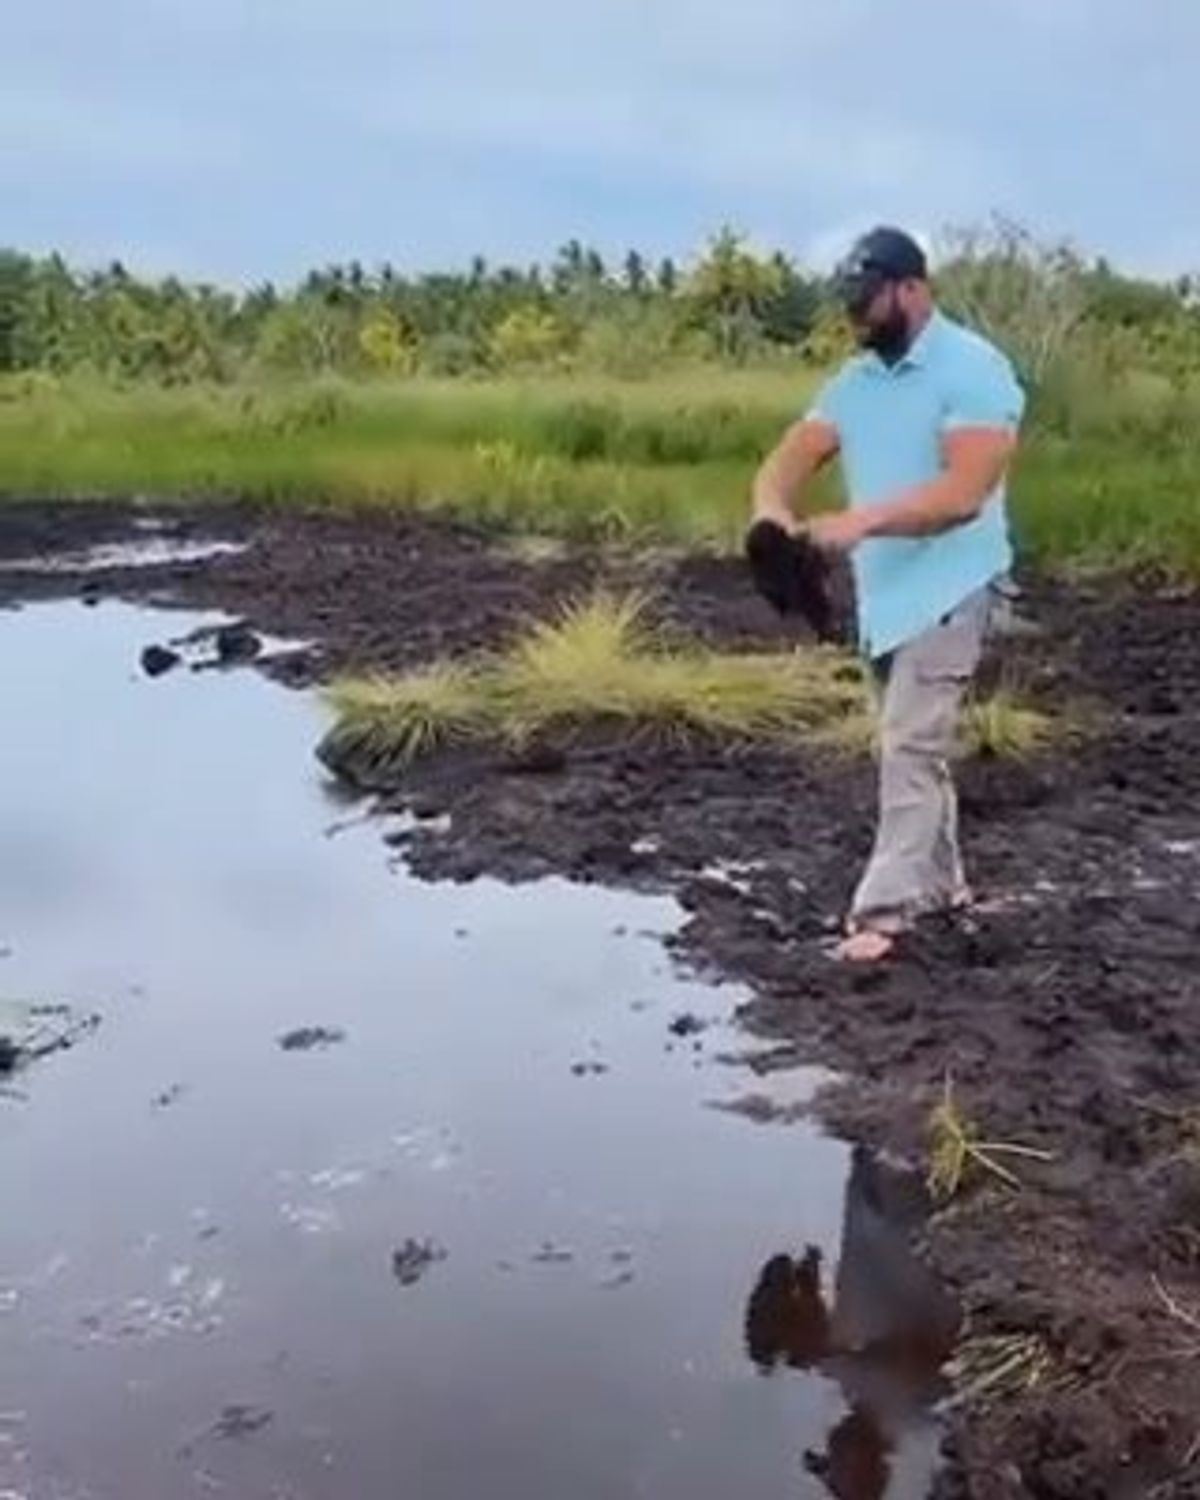 Uomo avanza di un passo e viene inghiottito dalla pozza di fango | video